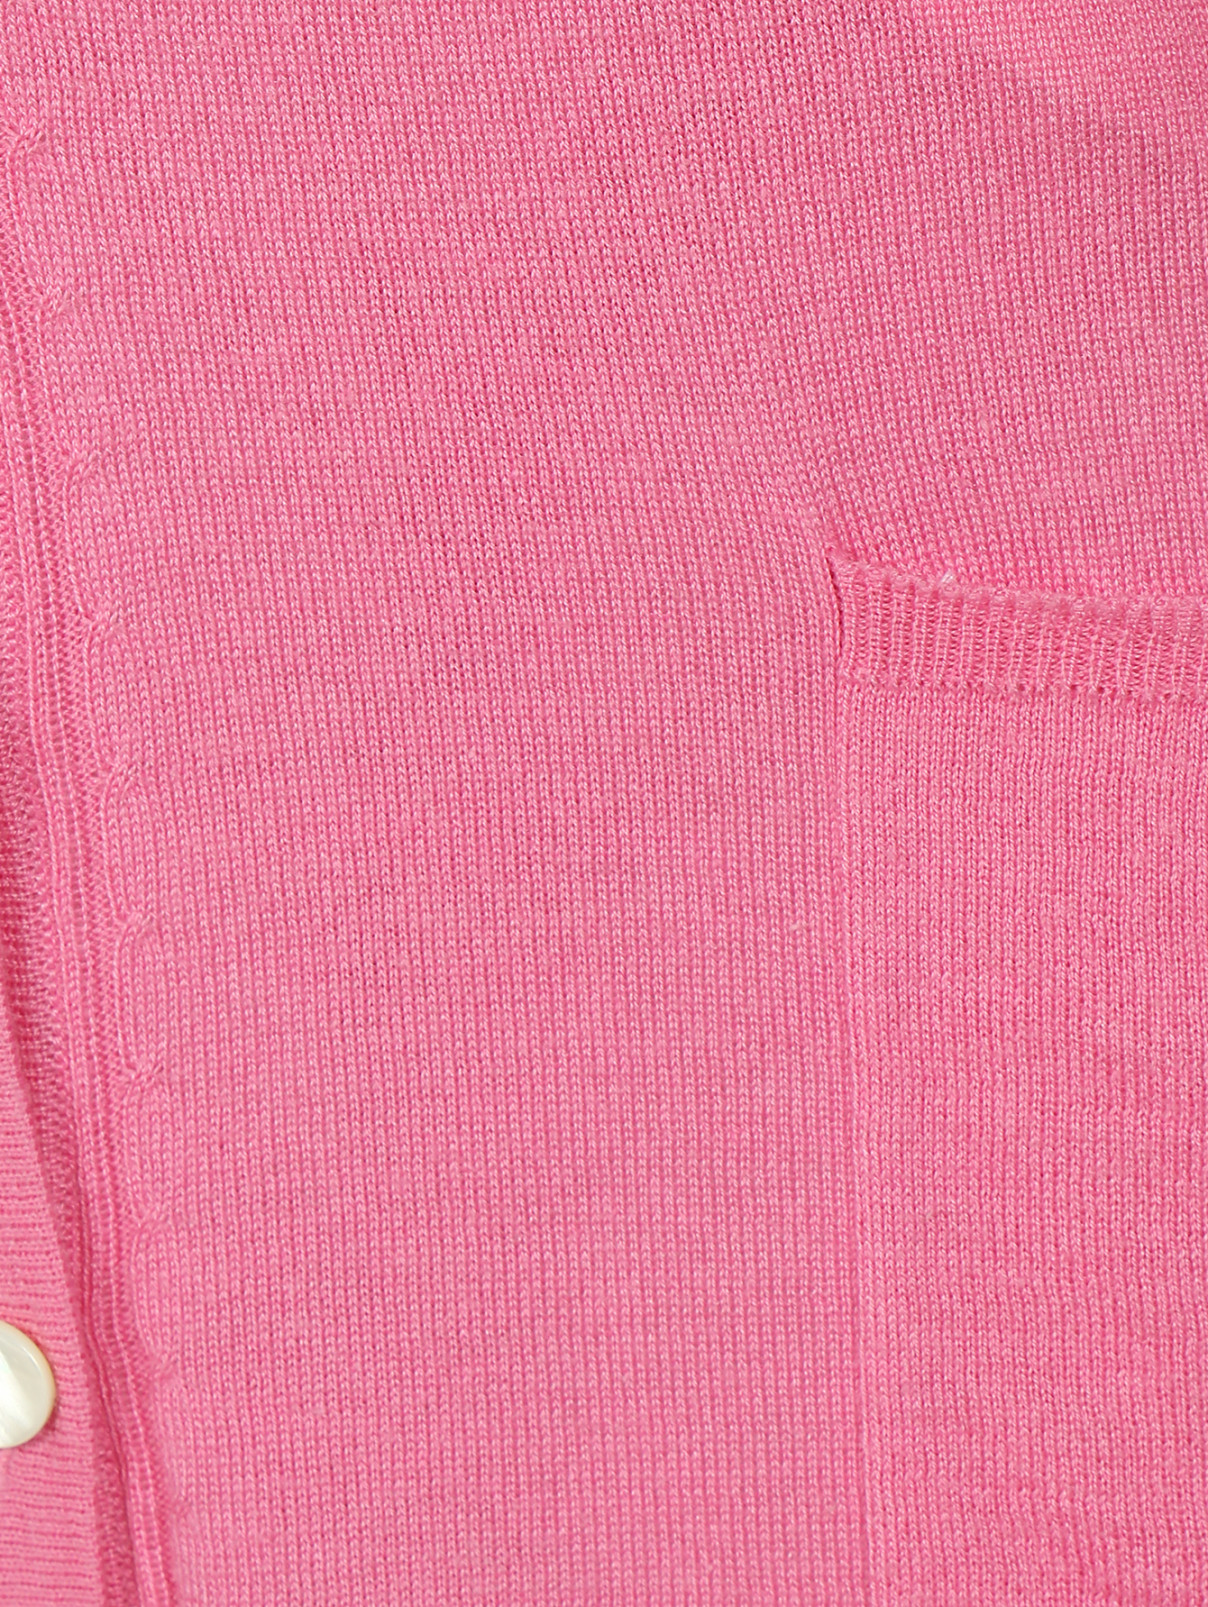 Кардиган из шелка и кашемира Marina Rinaldi  –  Деталь  – Цвет:  Розовый